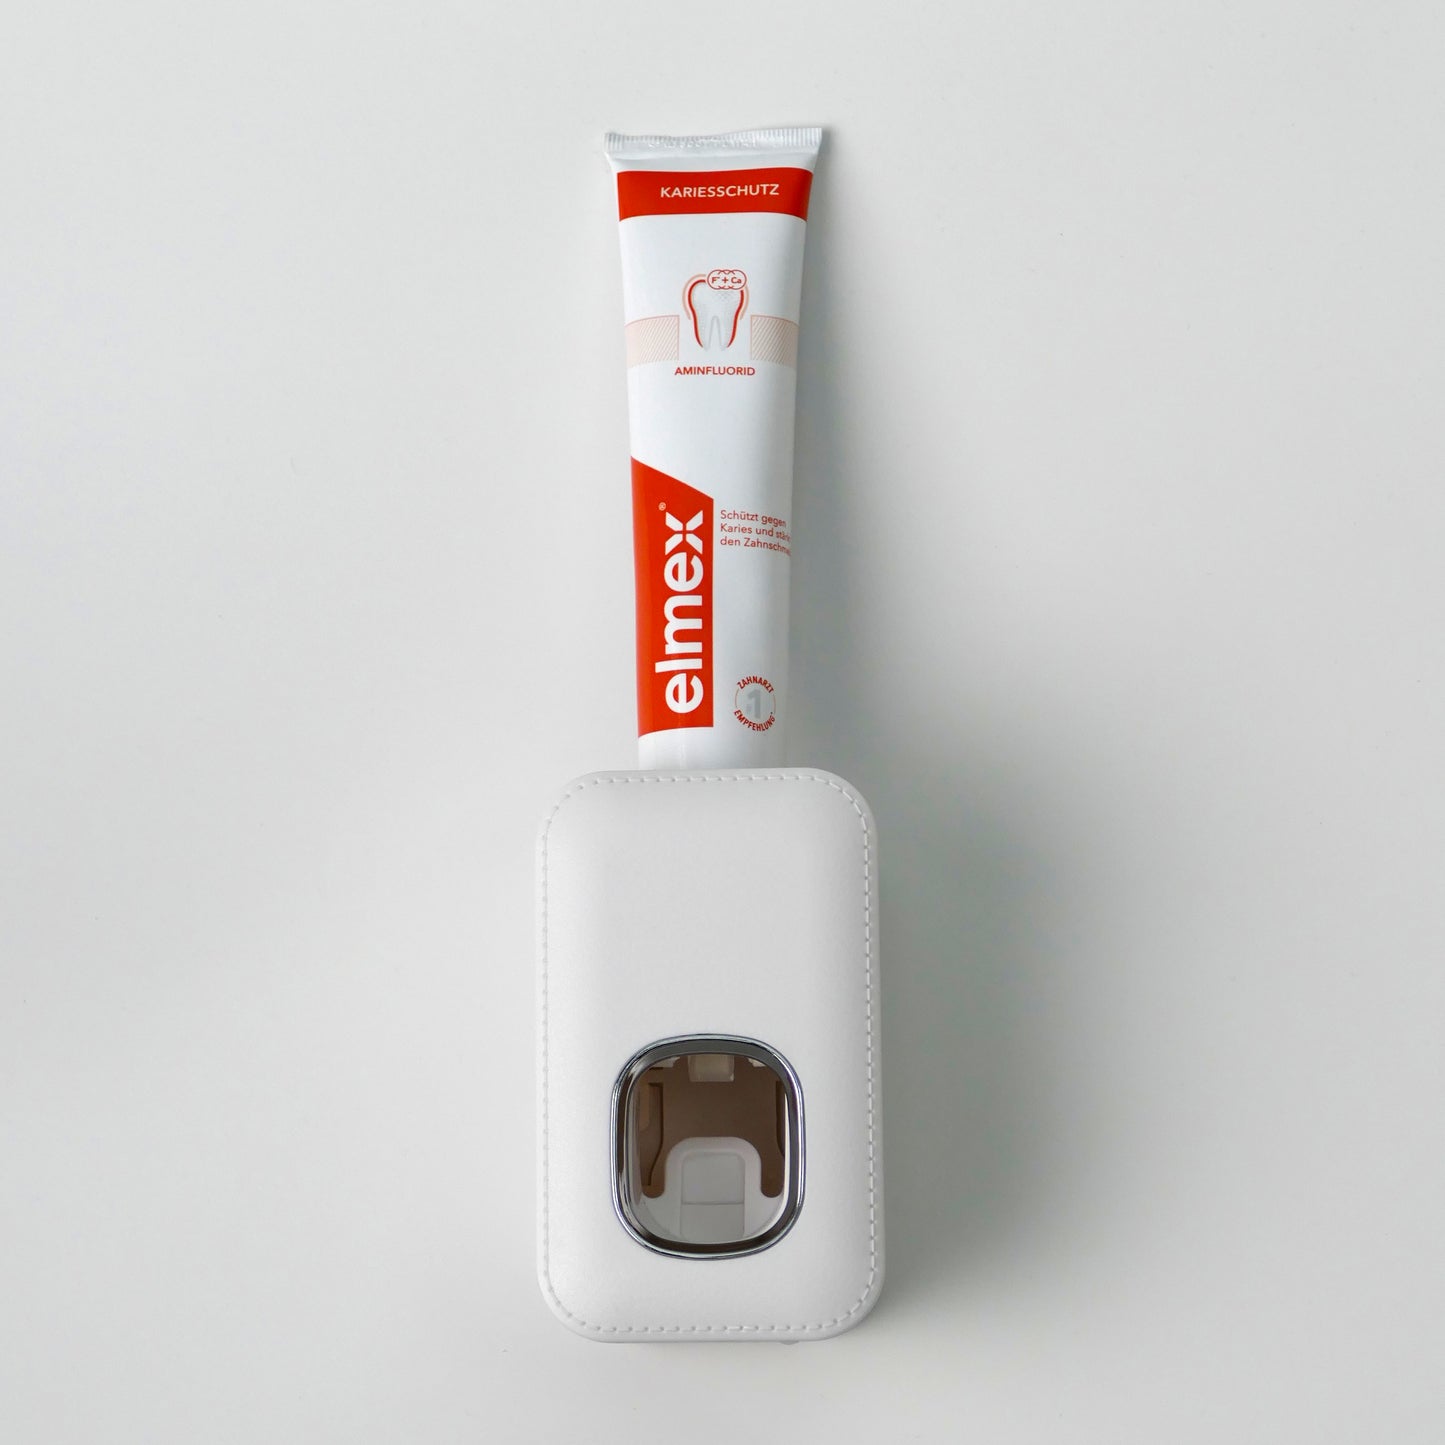 Zahnpastaspender Adapter für Elmex/Aronal